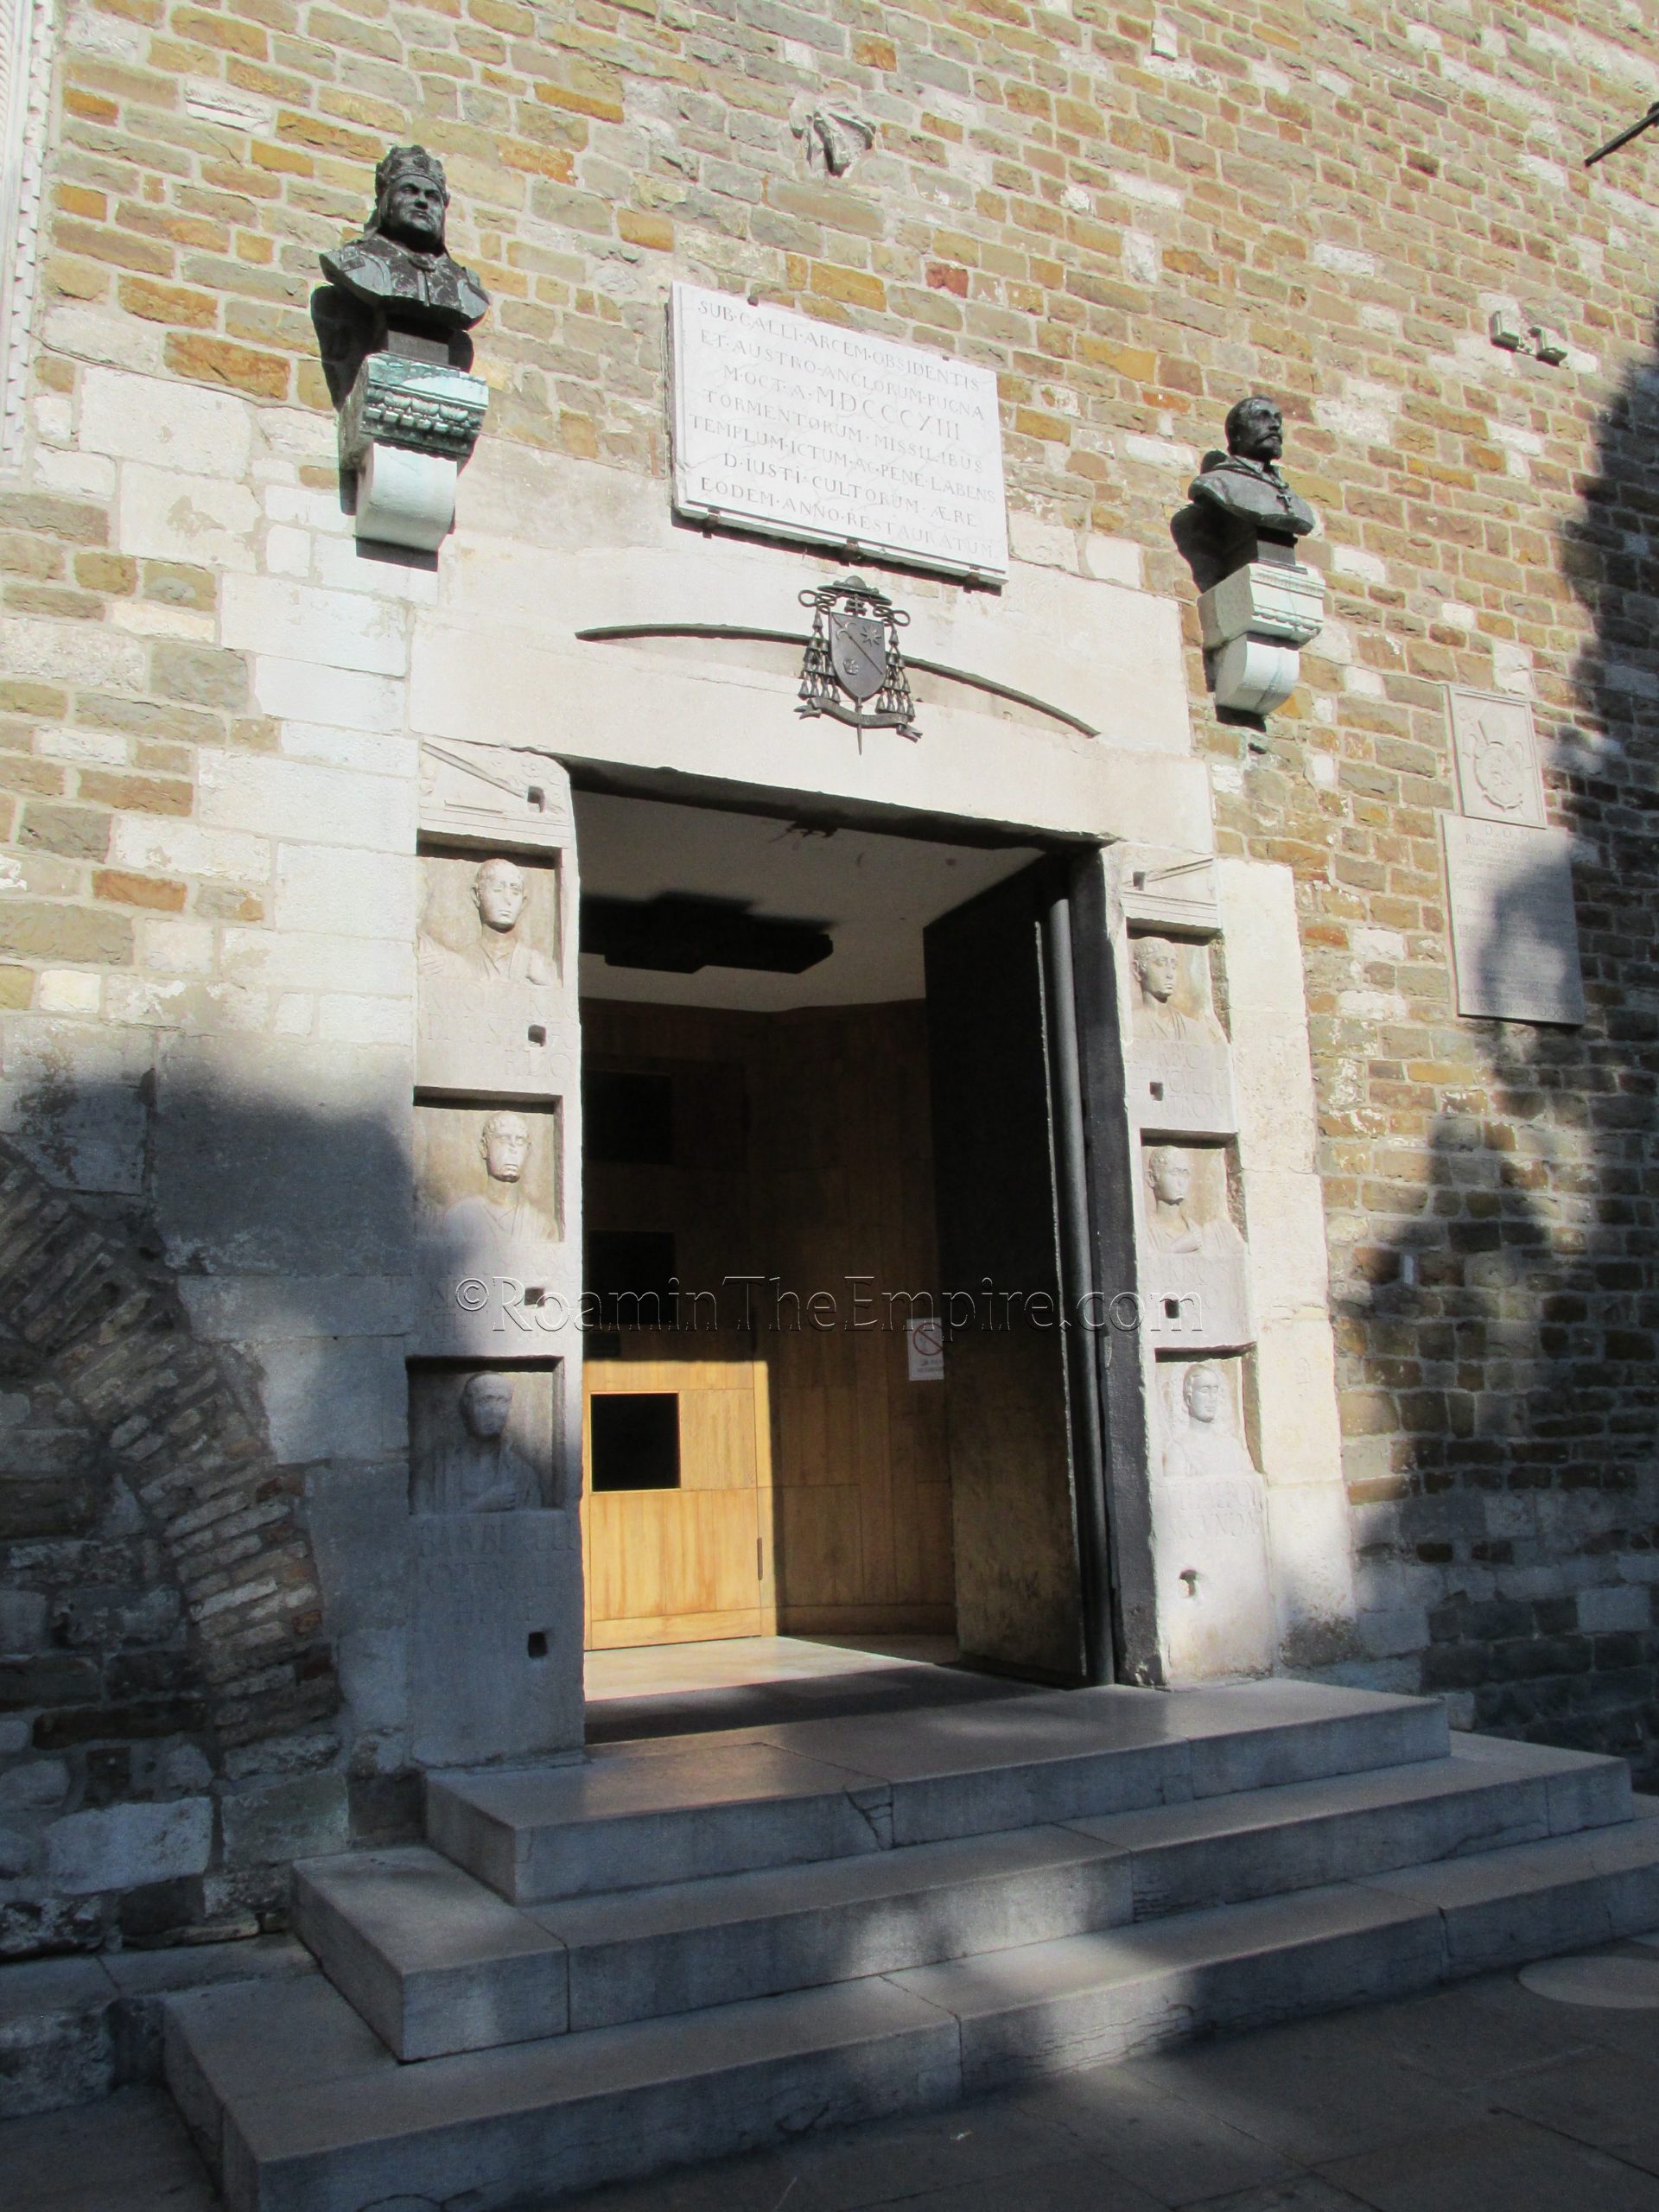 Entry of the Cattedrale di San Giusto Martire.